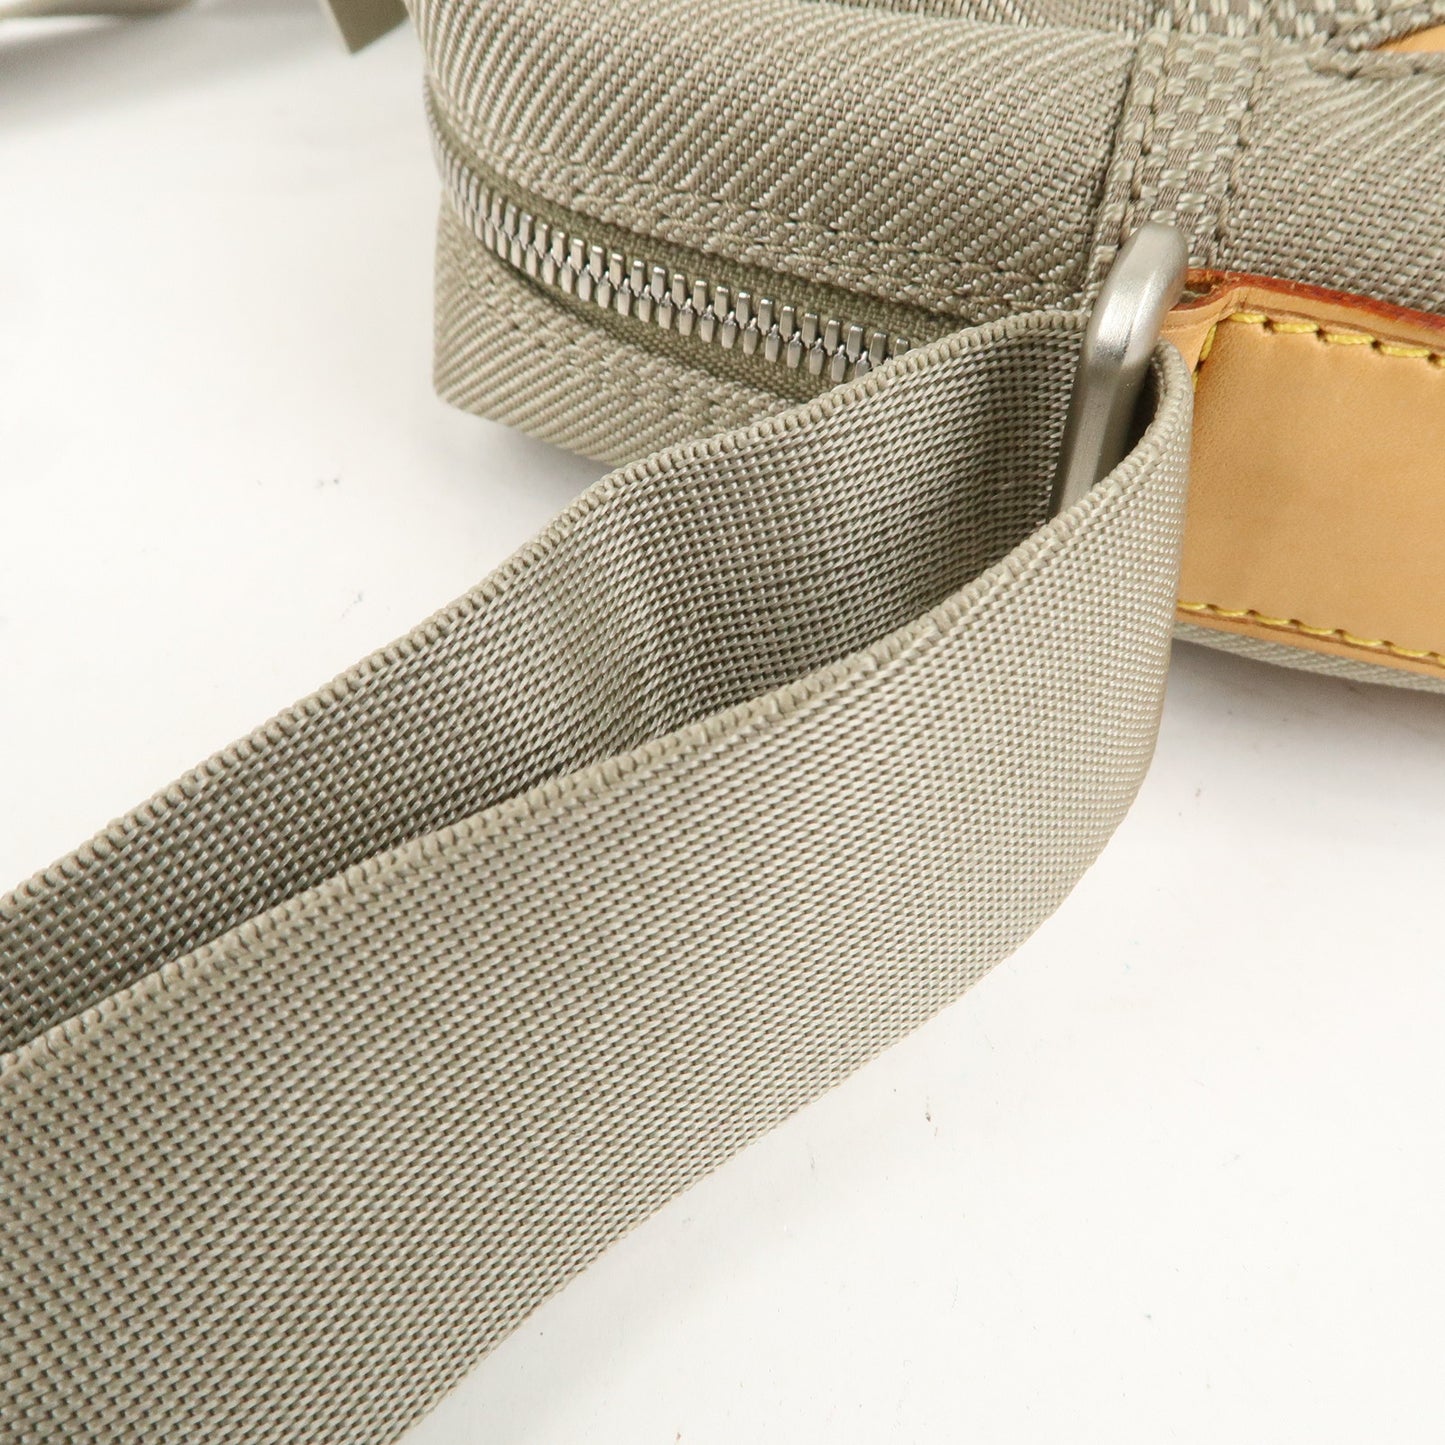 Louis Vuitton Damier Geant Citadin MM Shoulder Bag Sables M93041